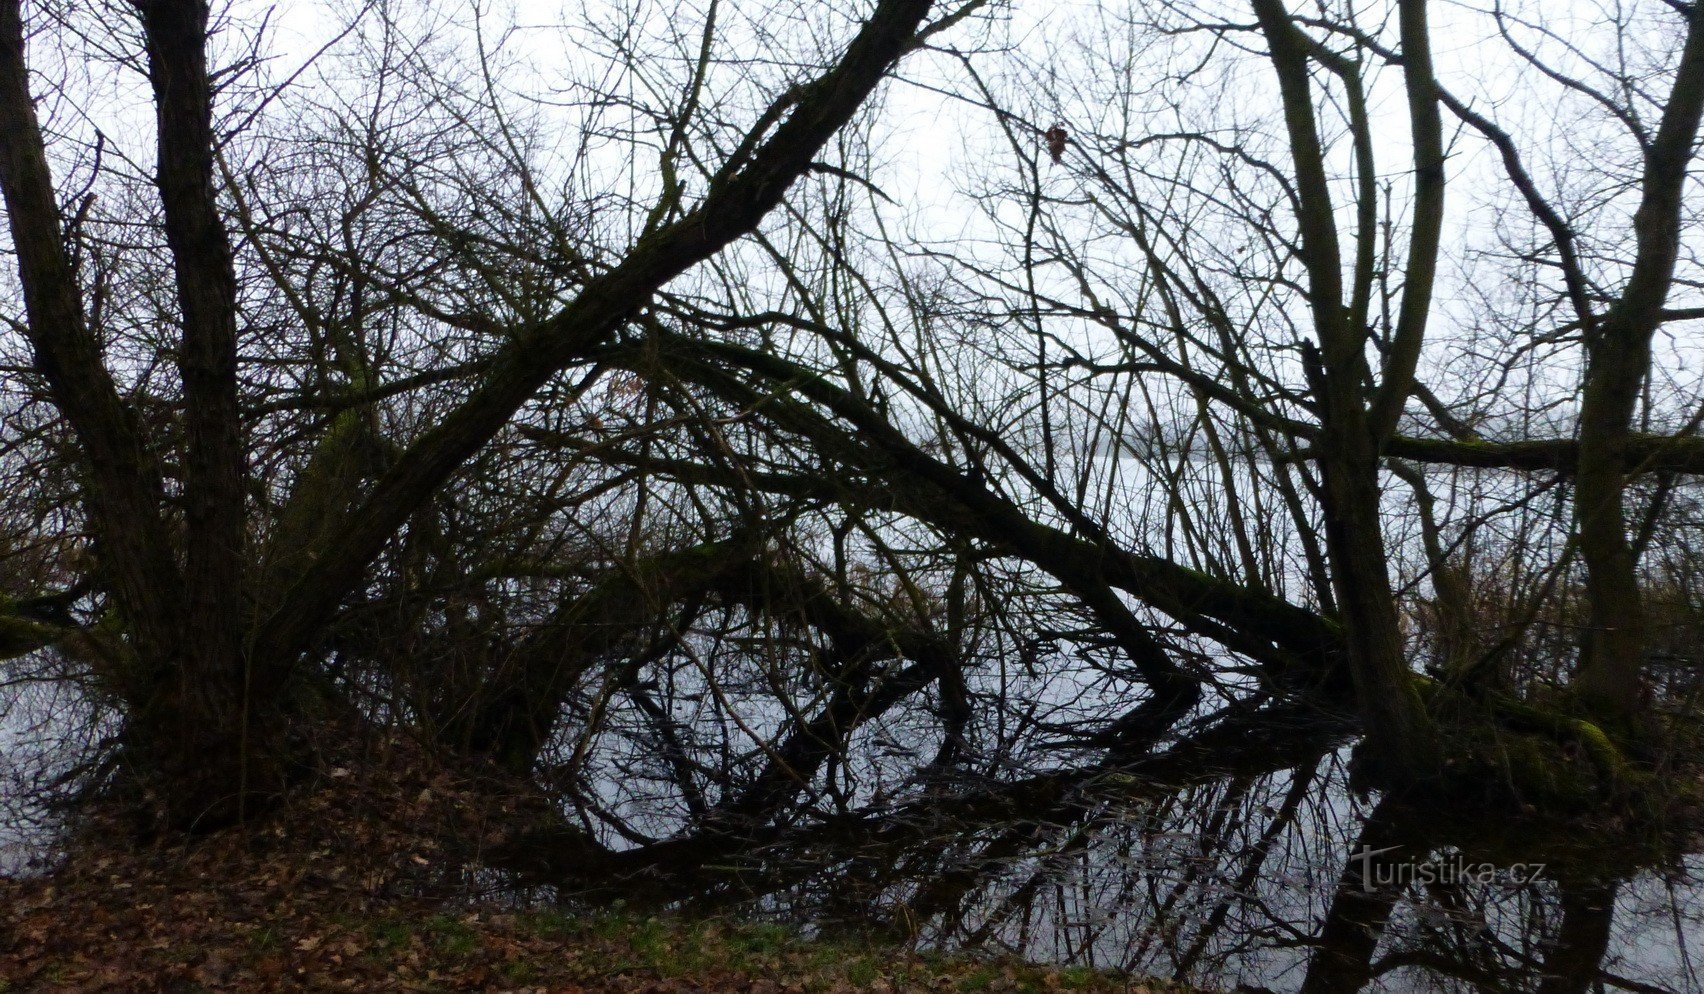 et fuglereservat ved Novozámecký-dammen med et vidunderligt observationsdæk